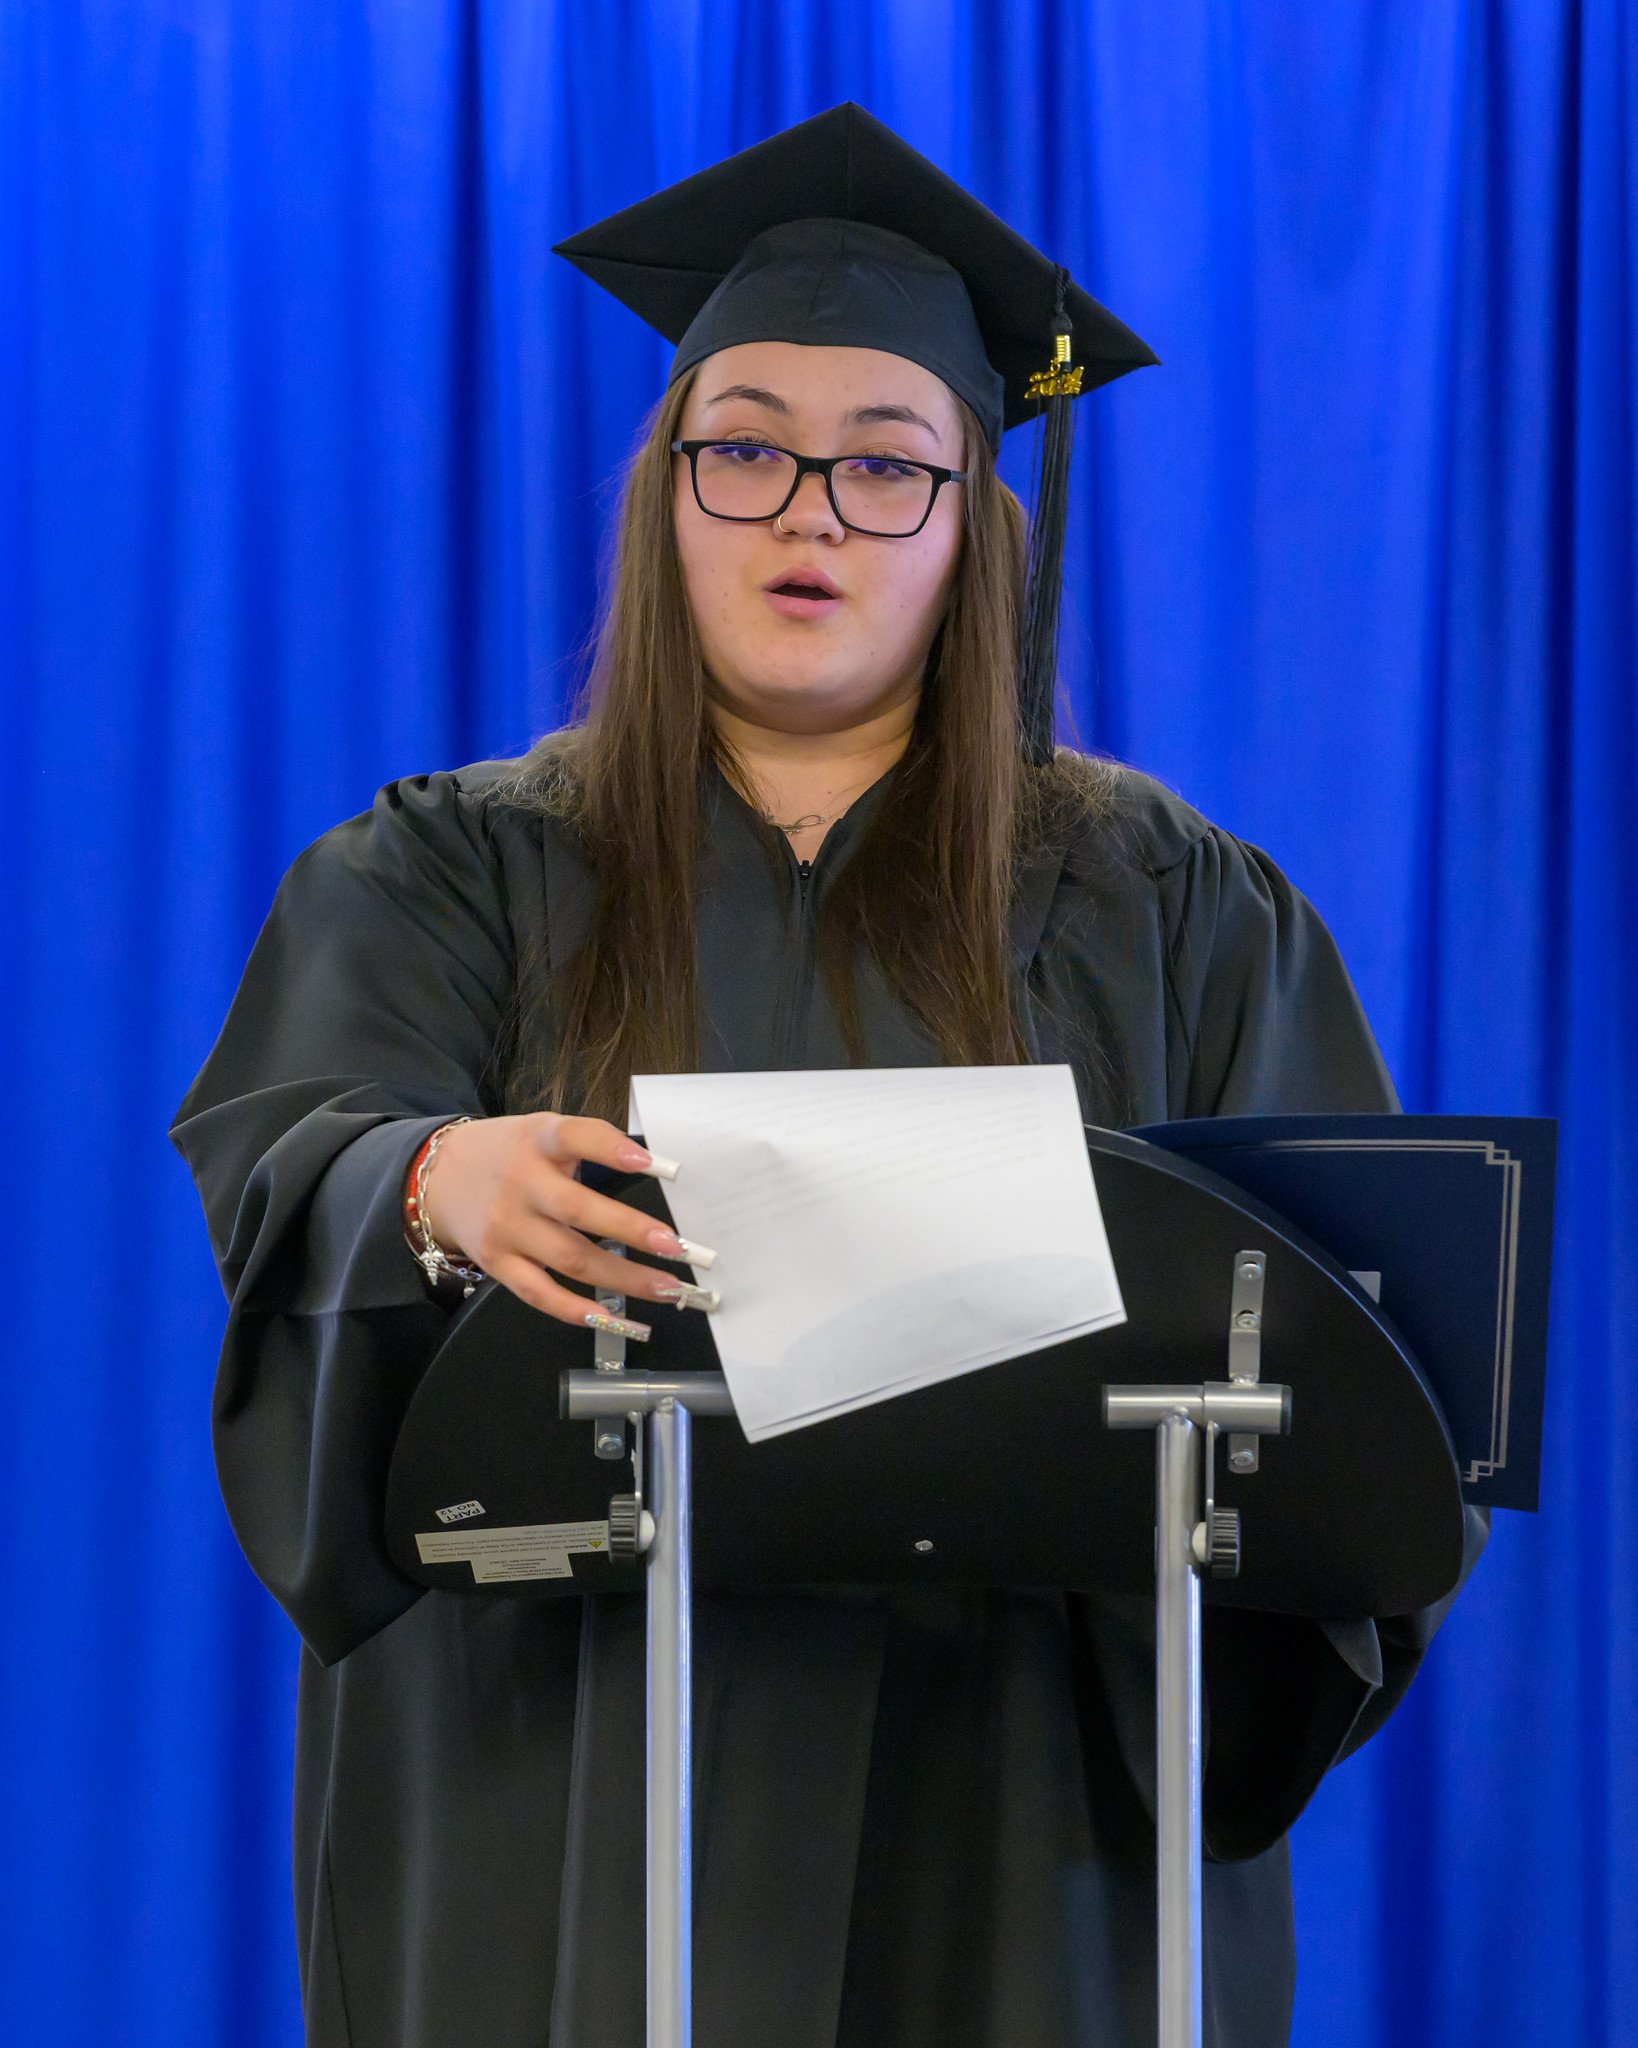 High school graduate stands at podium giving speech.